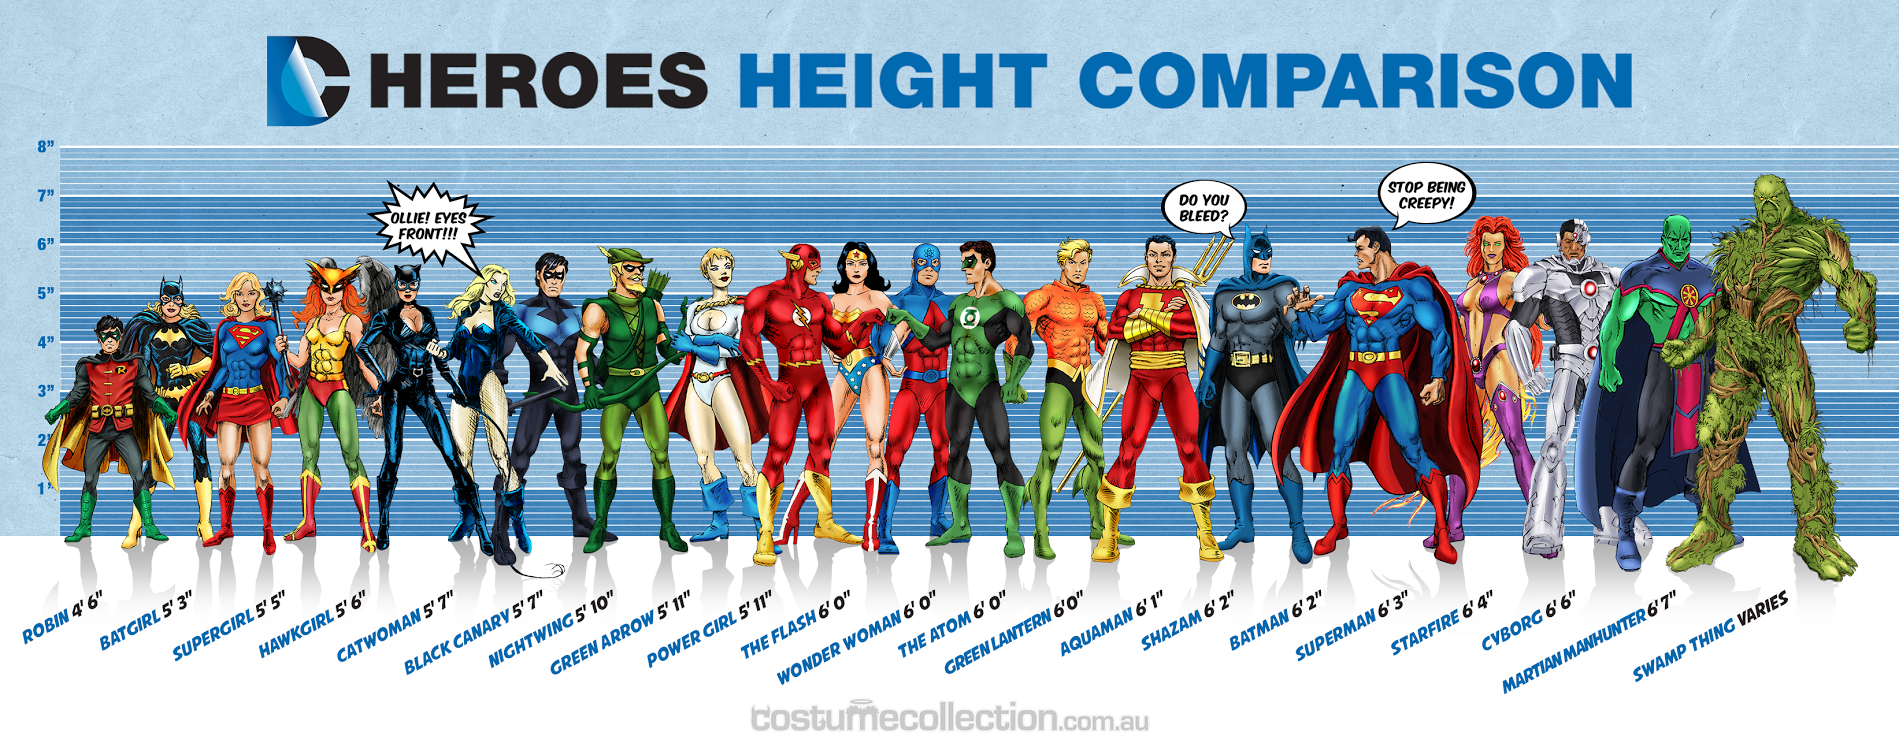 アメコミのスーパーヒーローを身長順に並べて比較するとこうなる Dna